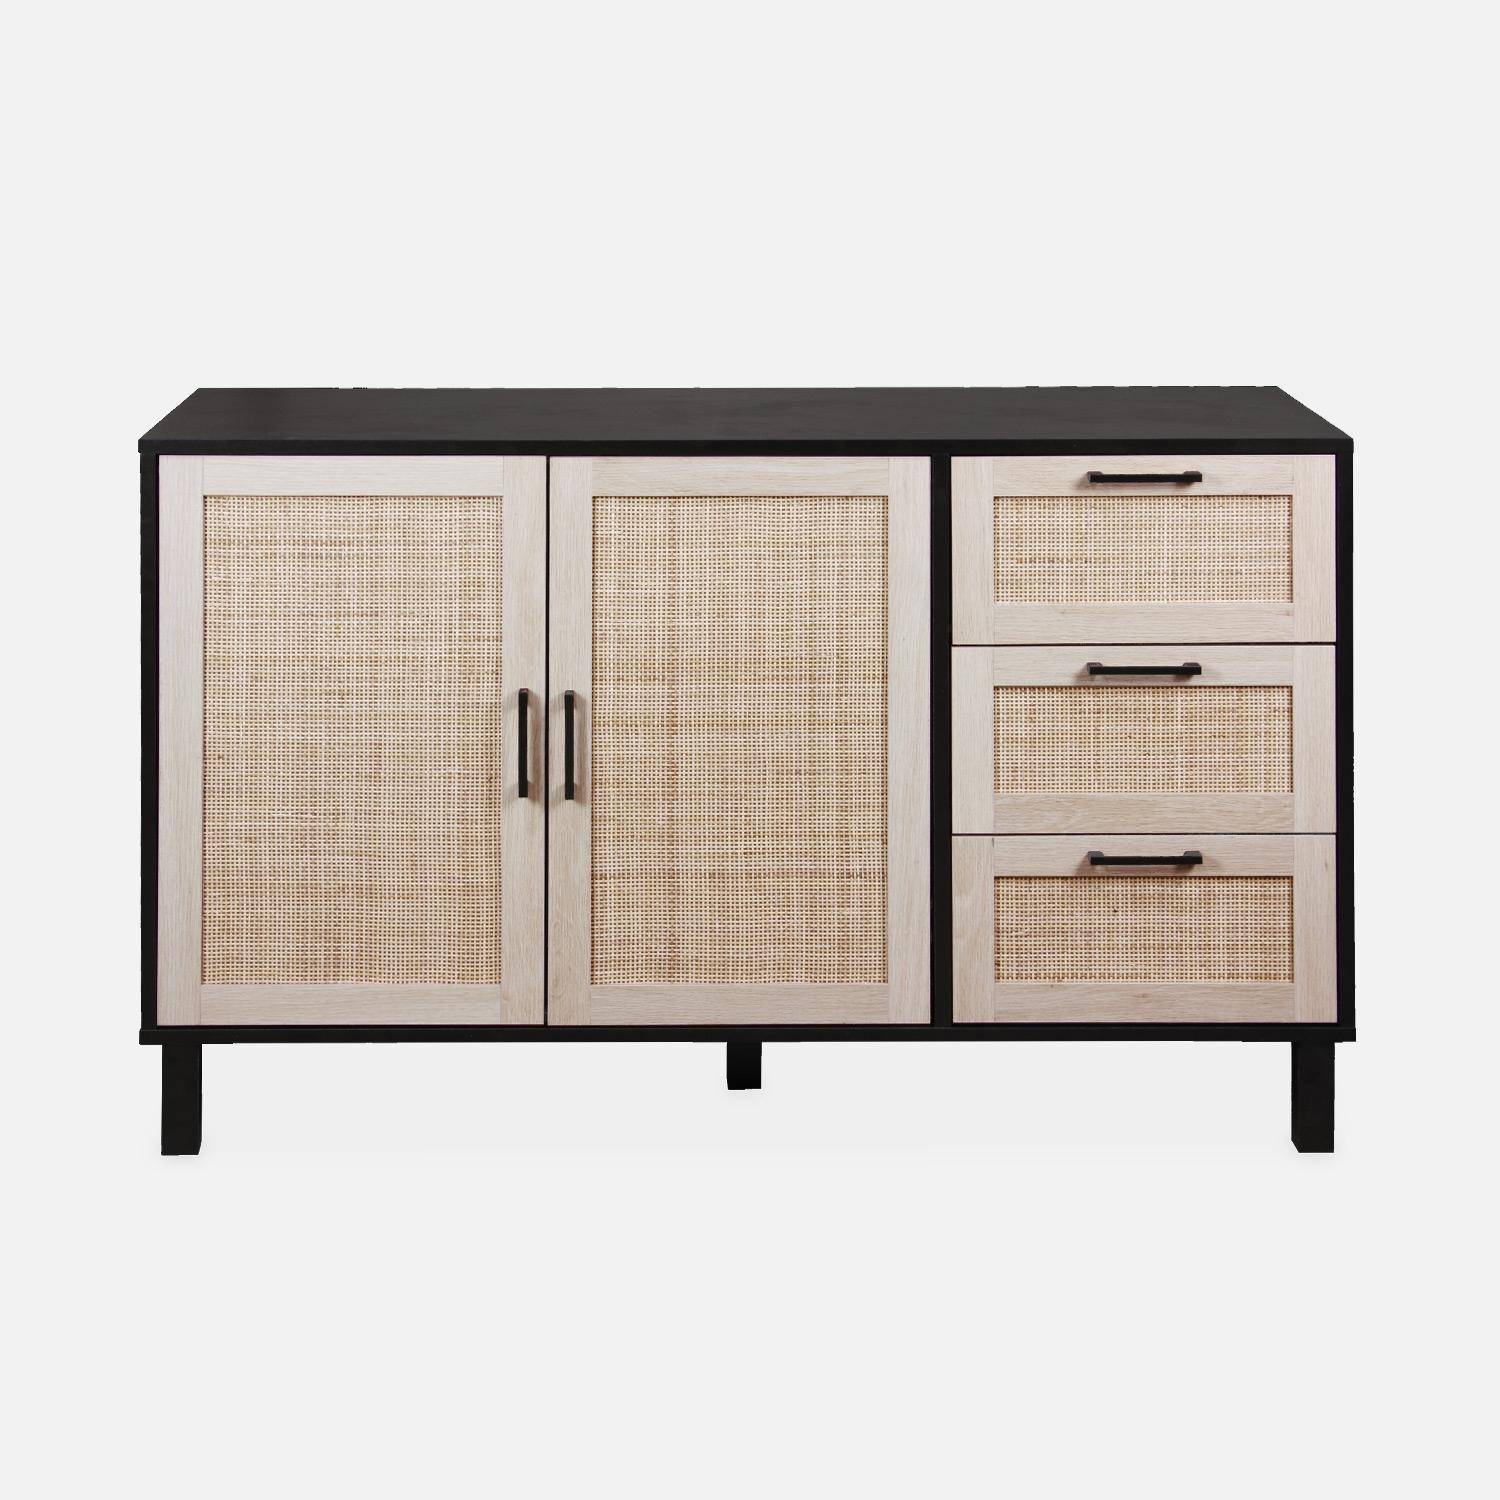 Black and cane sideboard 120 x 40 x 75cm - Bianca - 3 drawers, 2 doors, 2 levels, 1 shelf,sweeek,Photo4